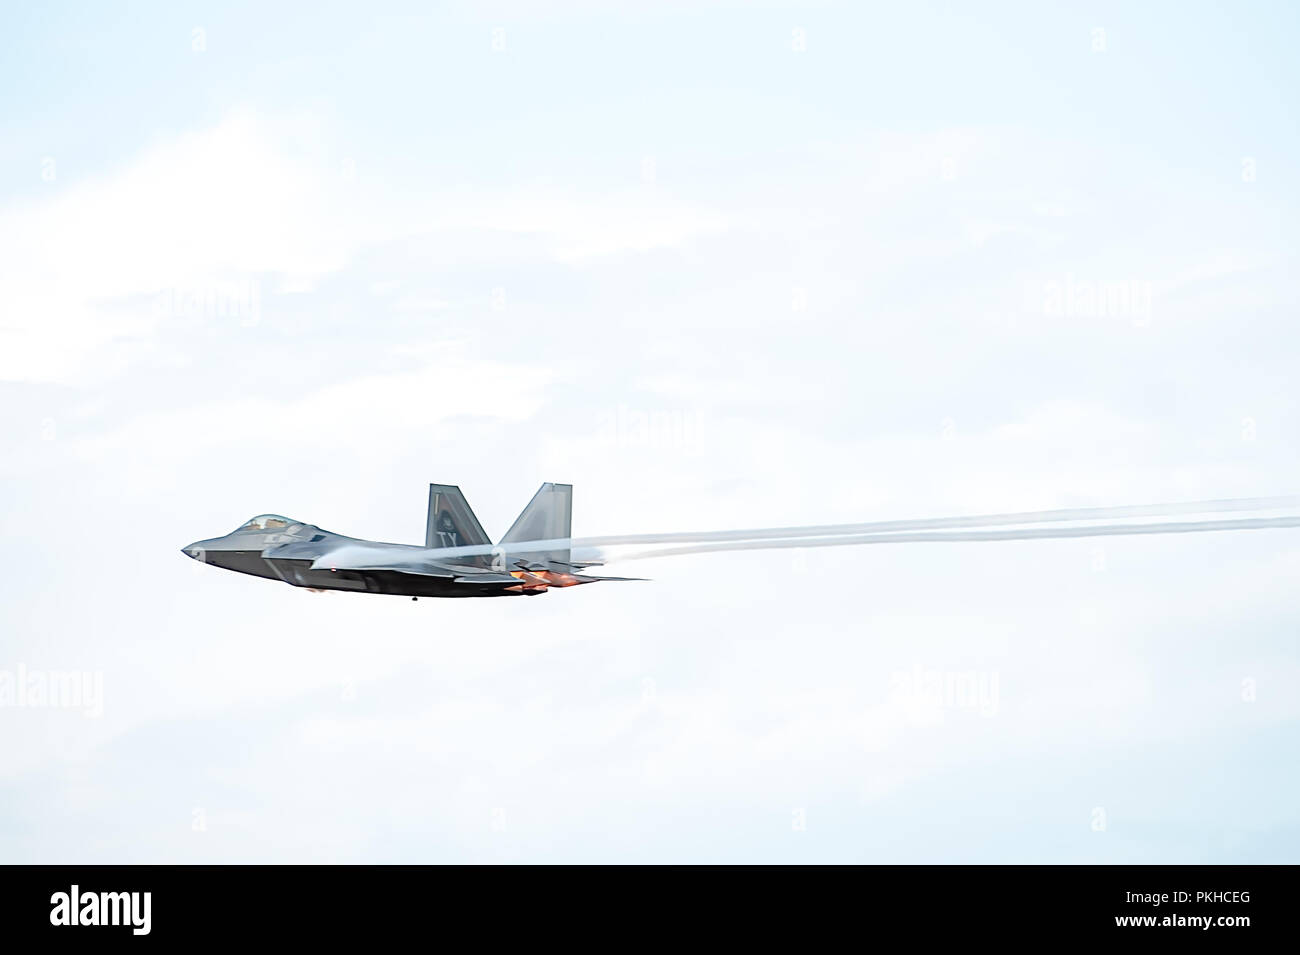 Oshkosh, WI - 28. Juli 2018: eine F-22 Fliegen mit Nachbrenner Erstellen von Kondensstreifen auf einer Airshow. Stockfoto